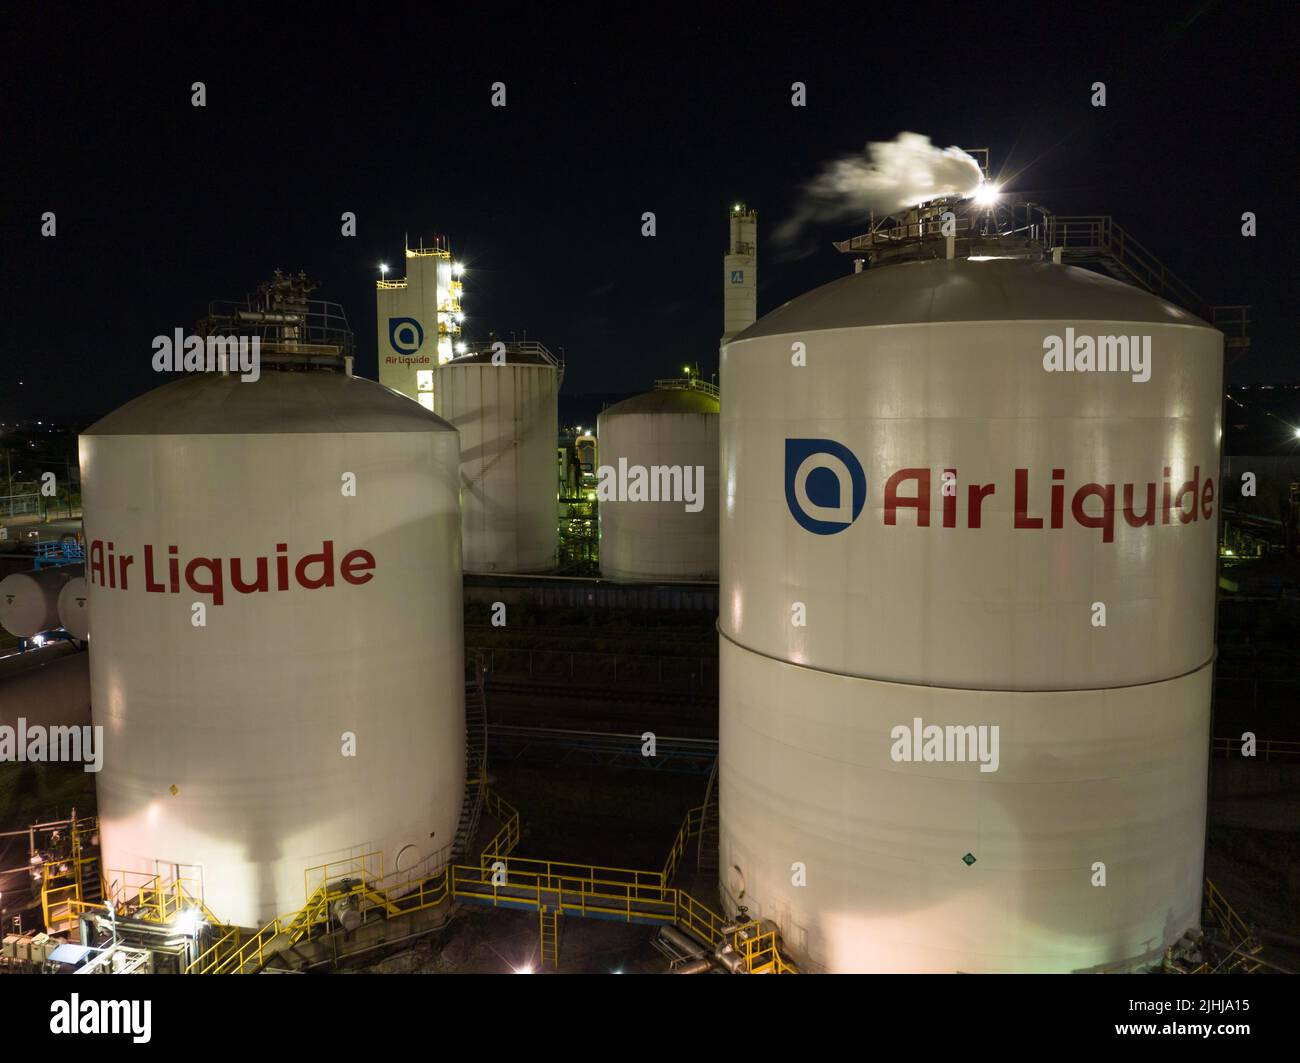 Una vista aérea de los tanques de almacenamiento de Air Liquide, un gas industrial global y servicios. El logotipo de Air Liquide se ve en la parte delantera de los tanques. Foto de stock